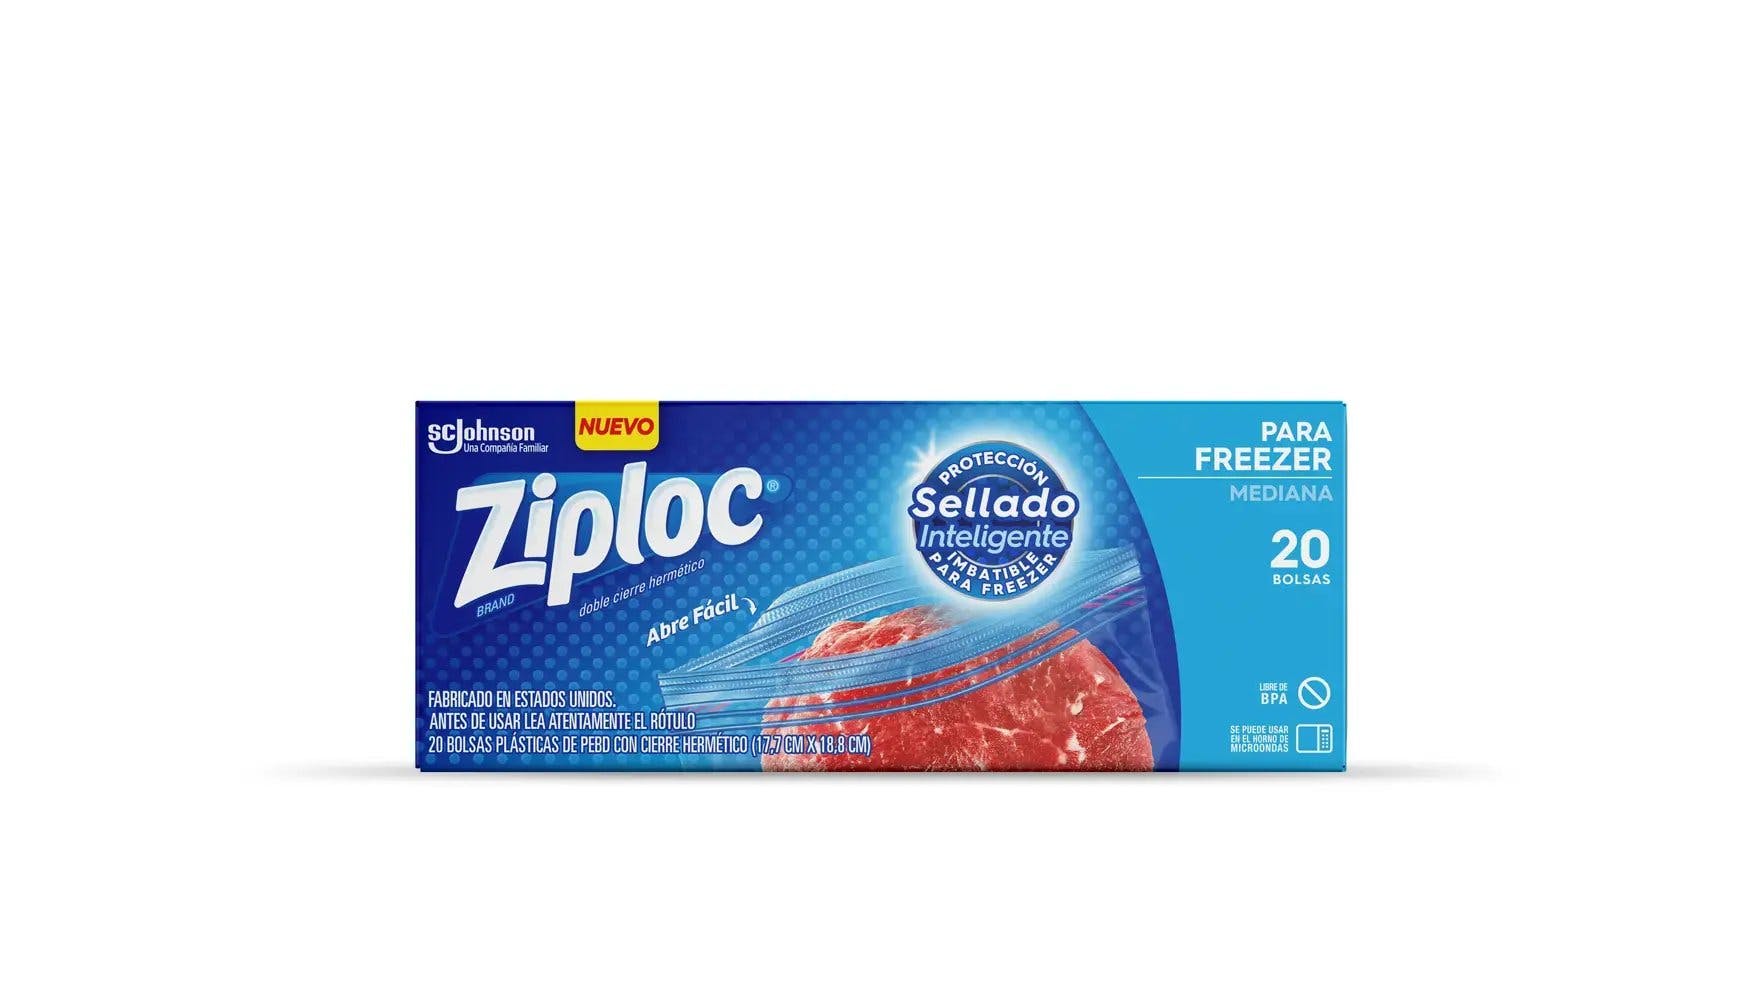 Frente de la bolsa Ziploc para freezer medianas